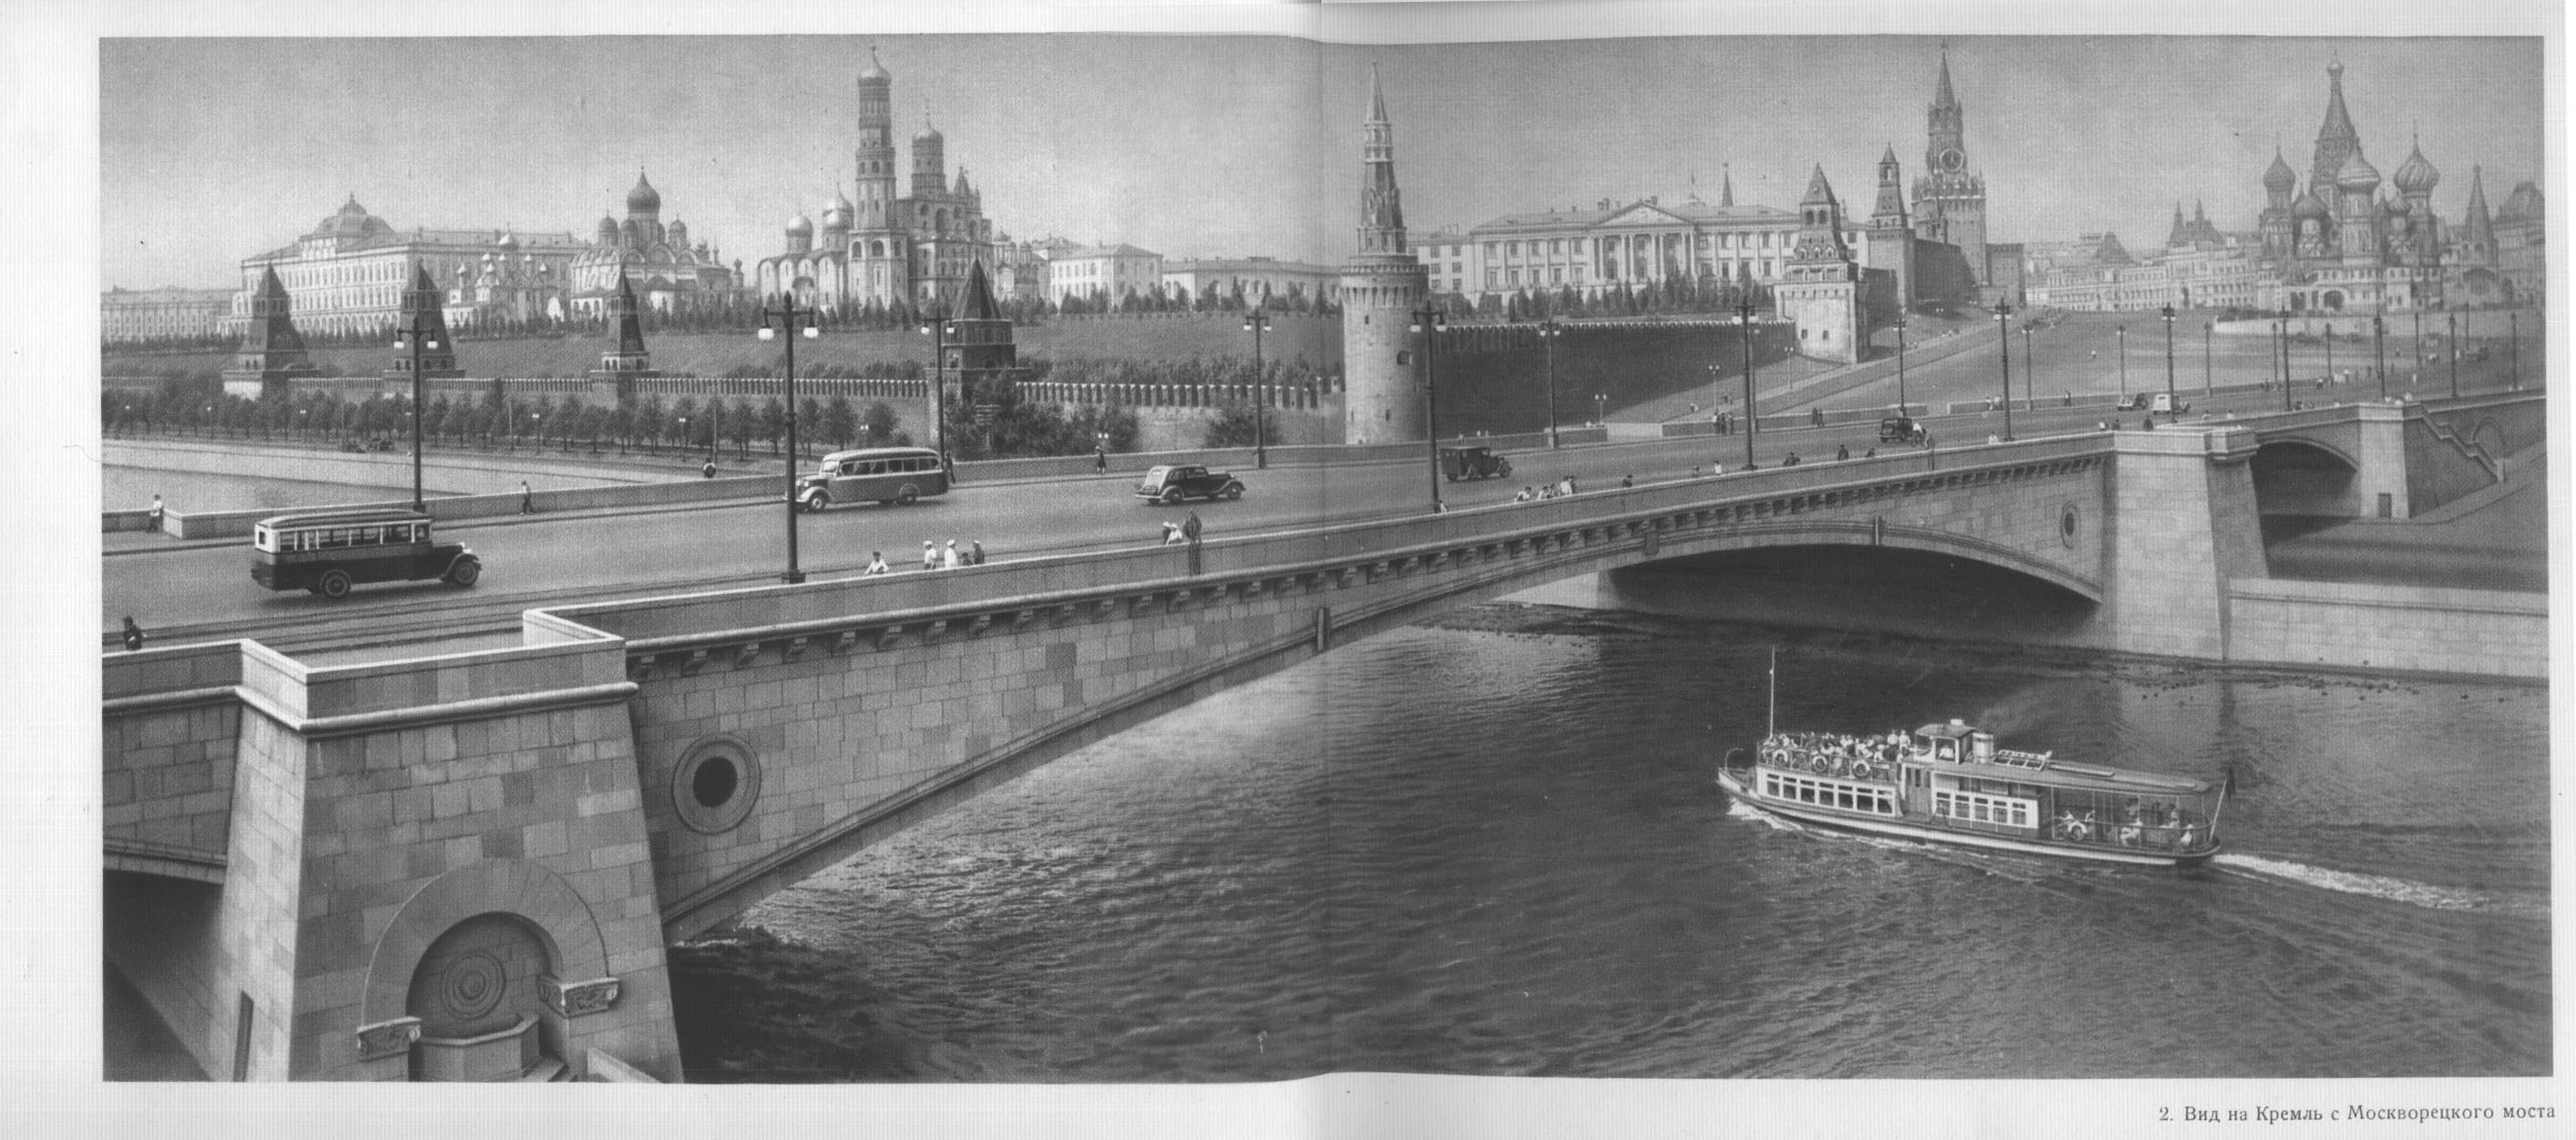 2. Вид на Кремль с Москворецкого моста